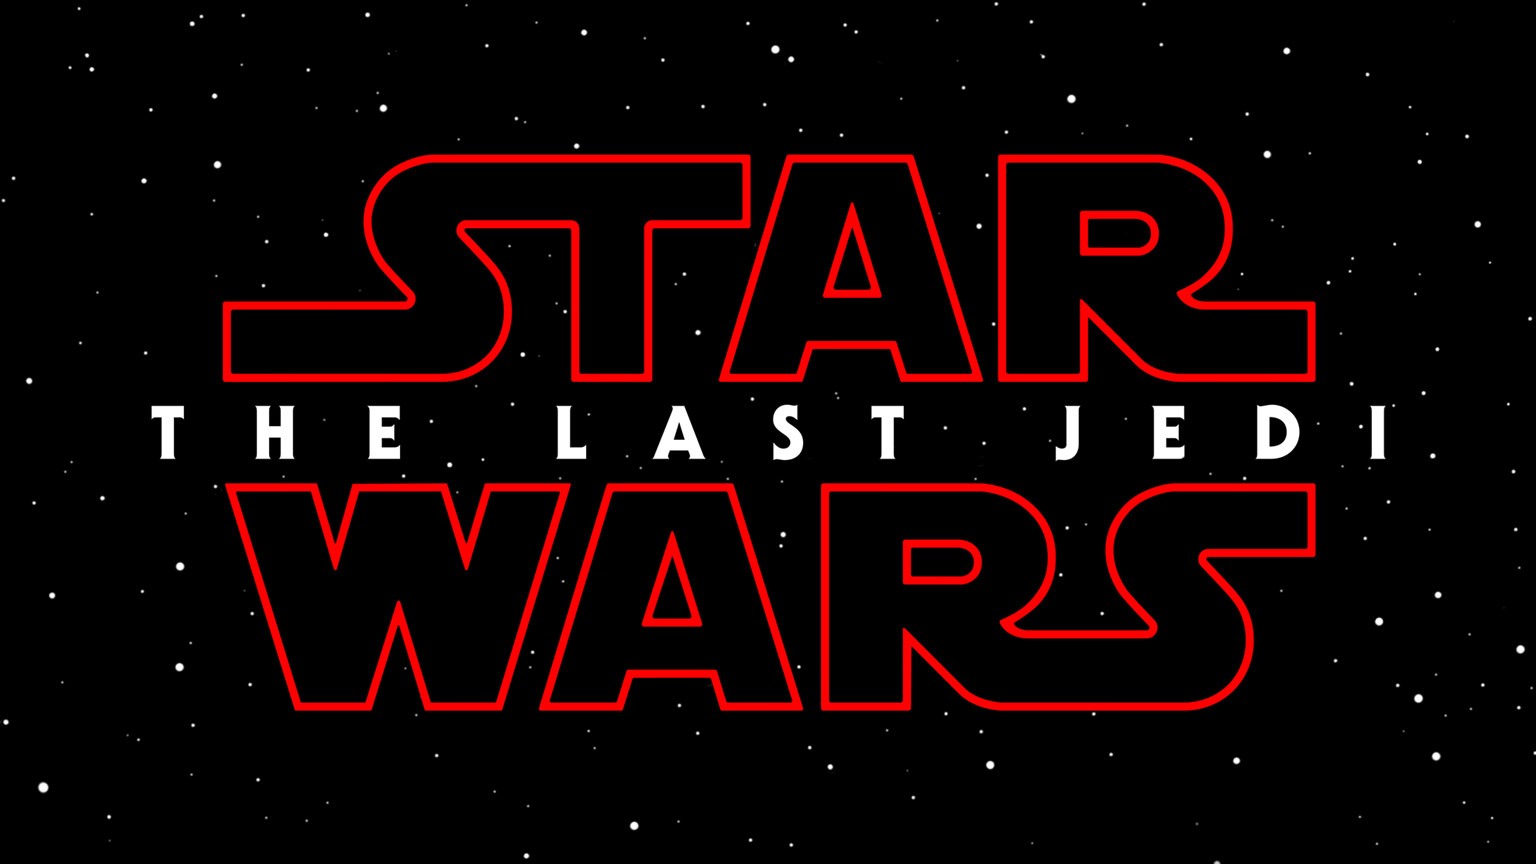 The STAR WARS LAST JEDI logo